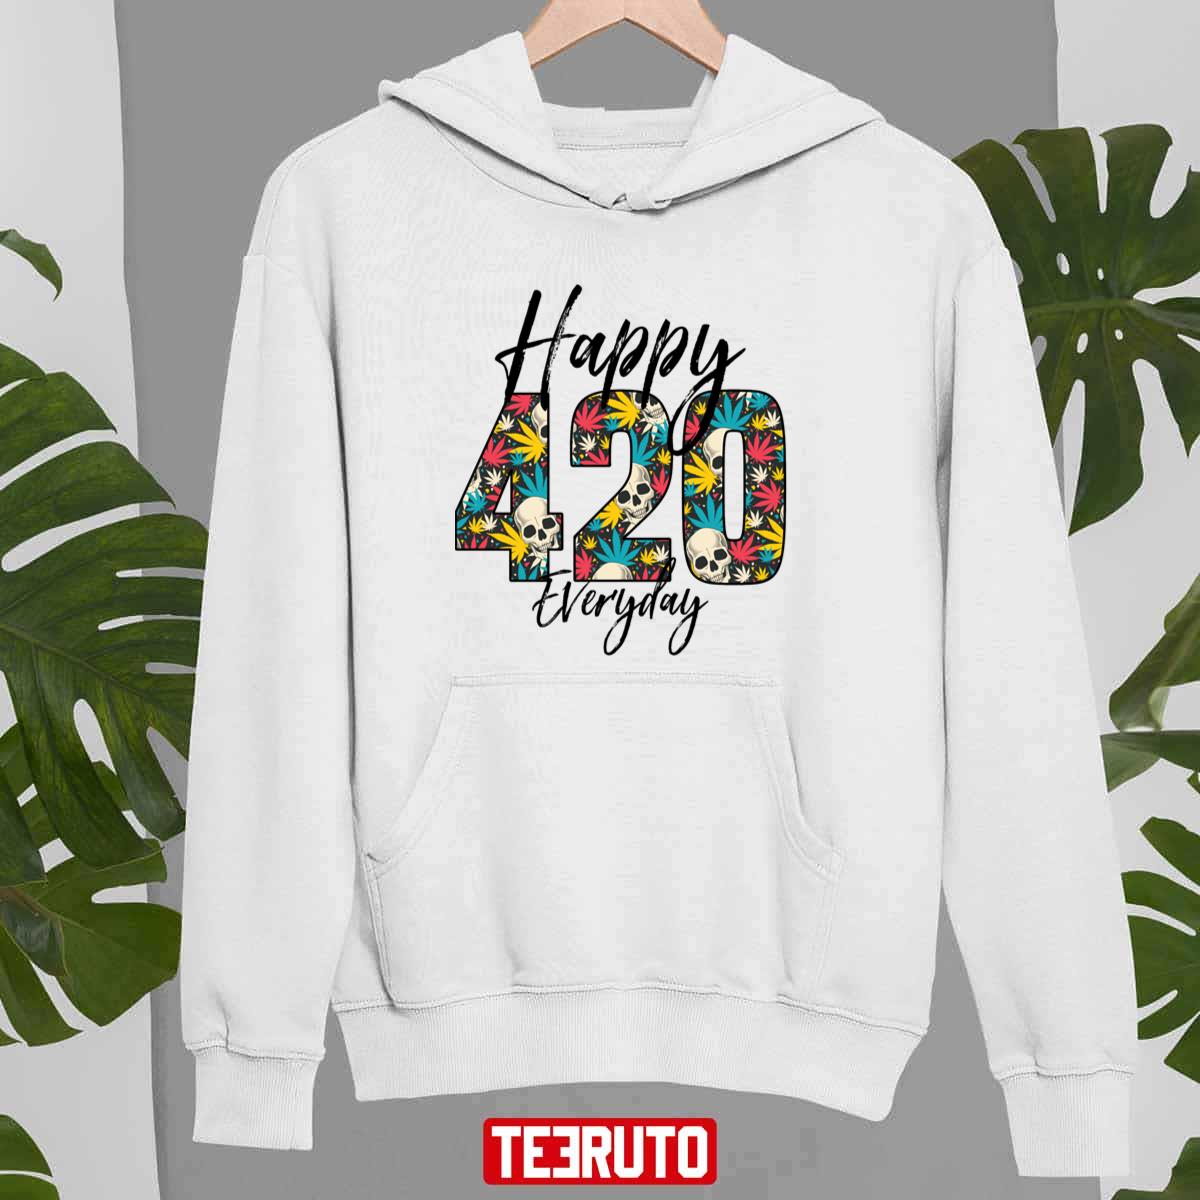 Hippie Happy 420 Everyday Design Unisex T-shirt